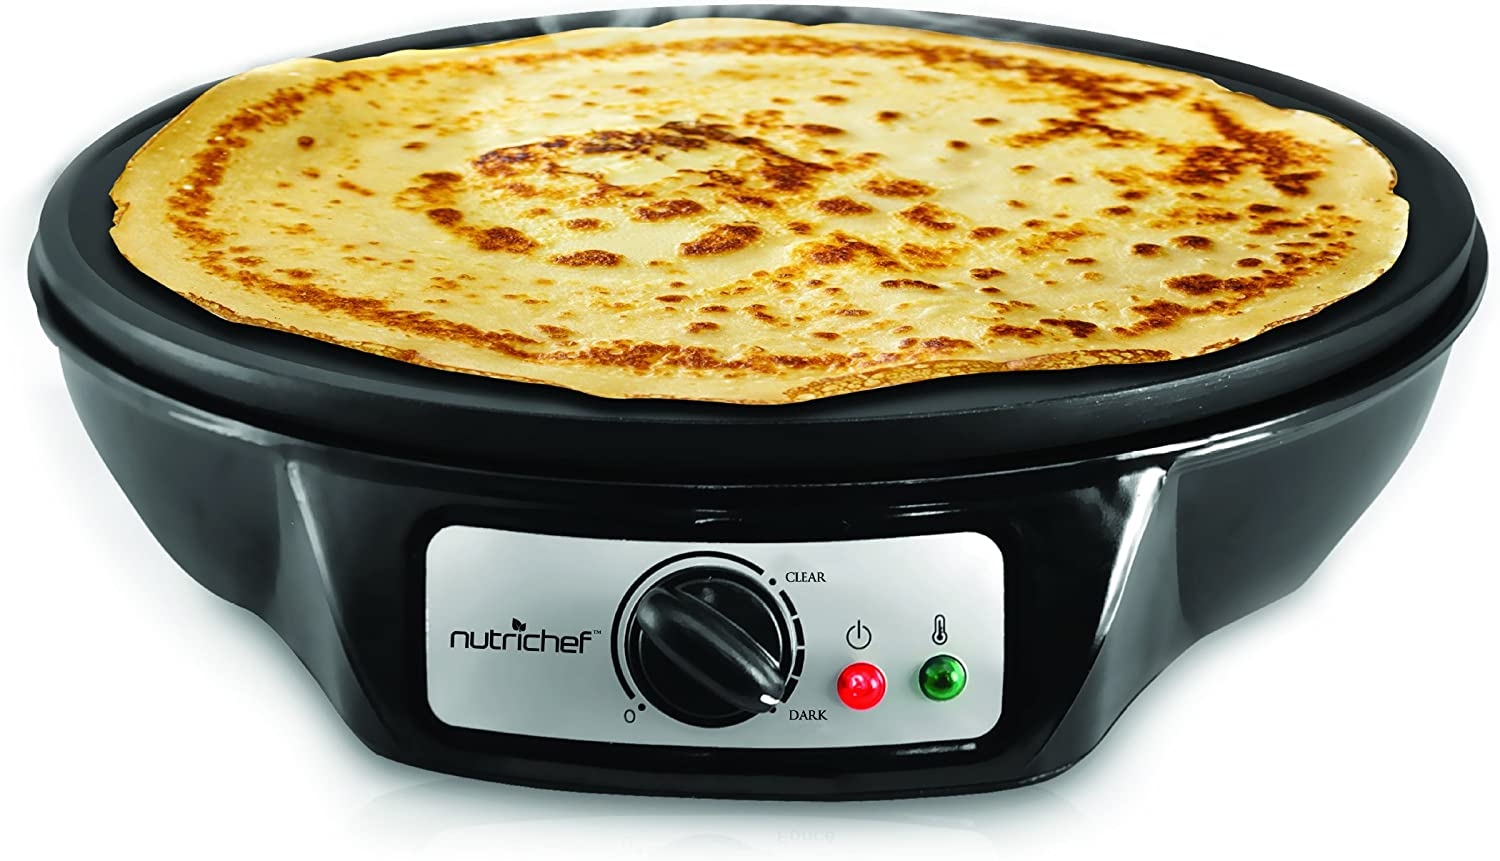 NutriChef Electric Griddle & Crepe Maker | Nonstick 12 Inch Hot Plate Cooktop | Adjustable Temperature Control | Batter Spreader